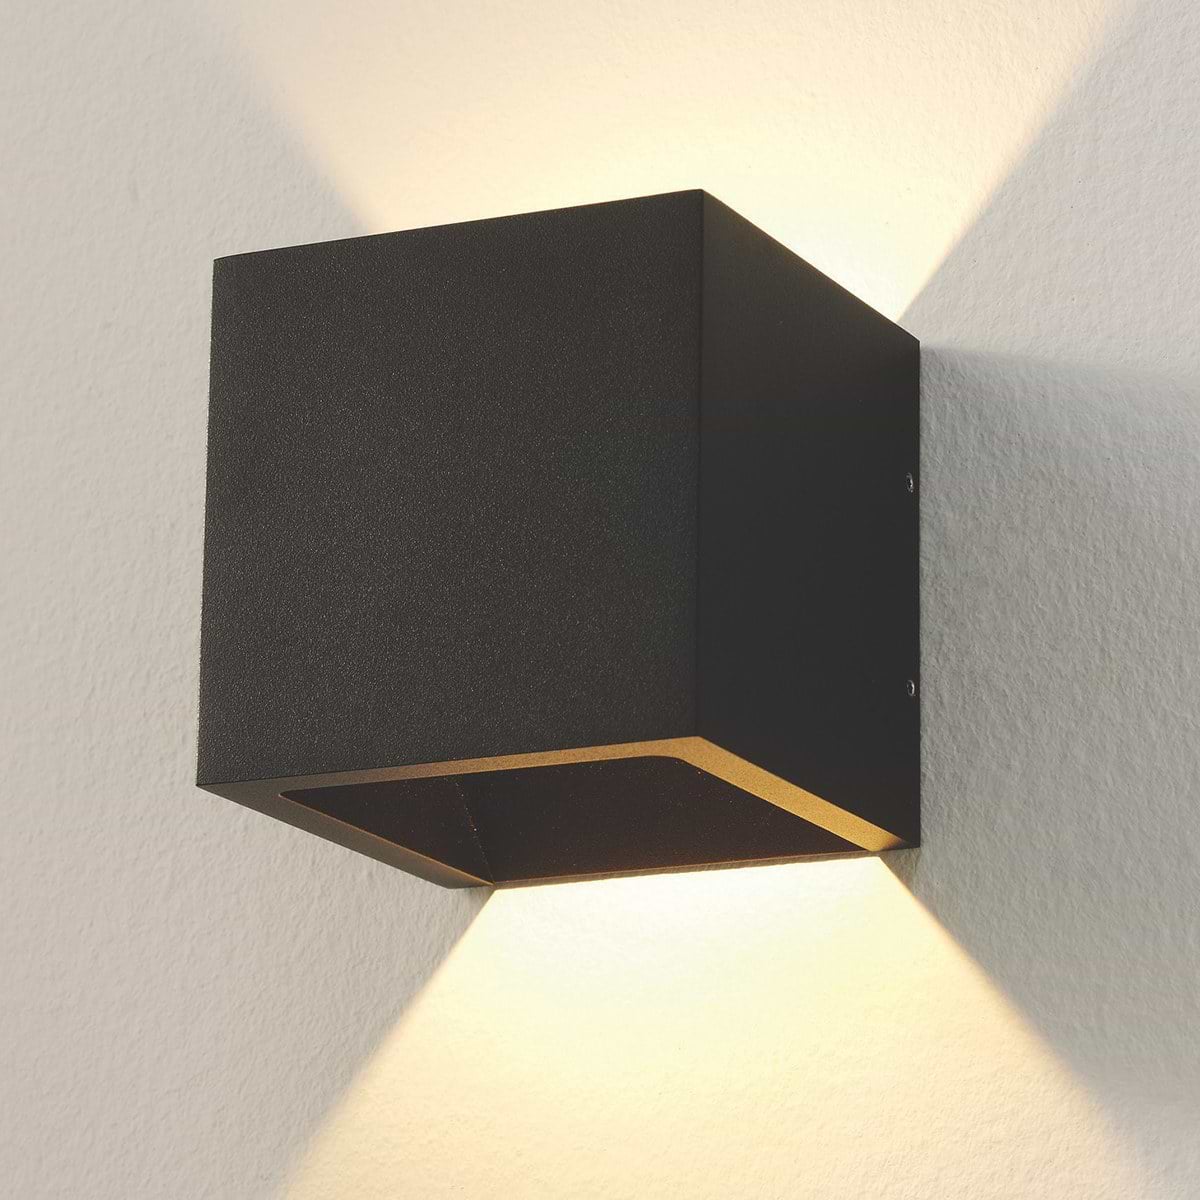 wildernis Karakteriseren woensdag Badkamer wandlamp zwart "Cube" 10x10x10cm LED, ART DELIGHT - WLCUBEZW -  Webo Verlichting